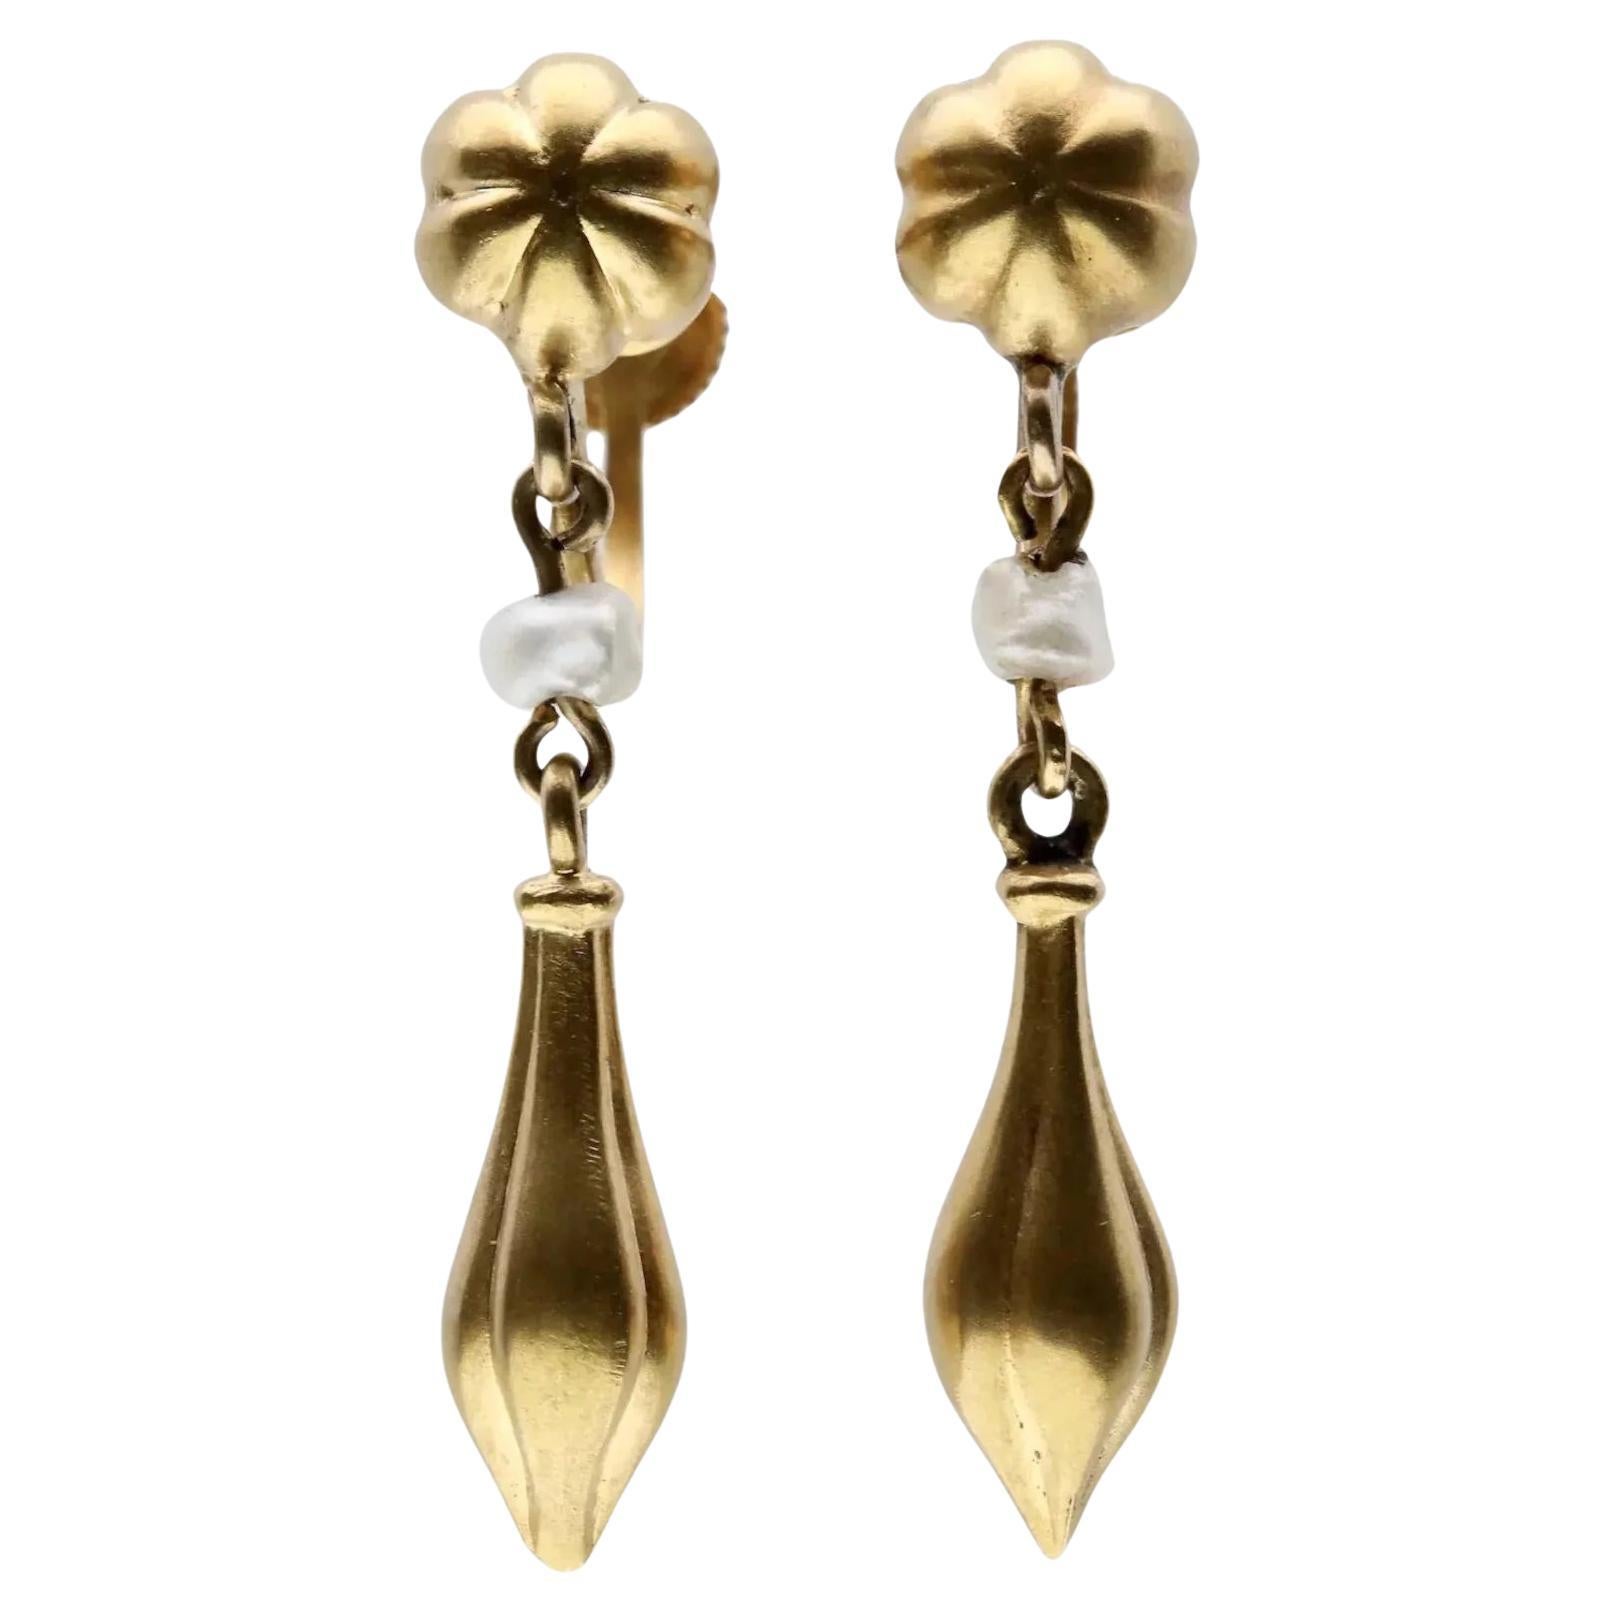 Viktorianische etruskische Revival-Ohrringe aus 14 Karat Gelbgold mit natürlichen Perlen